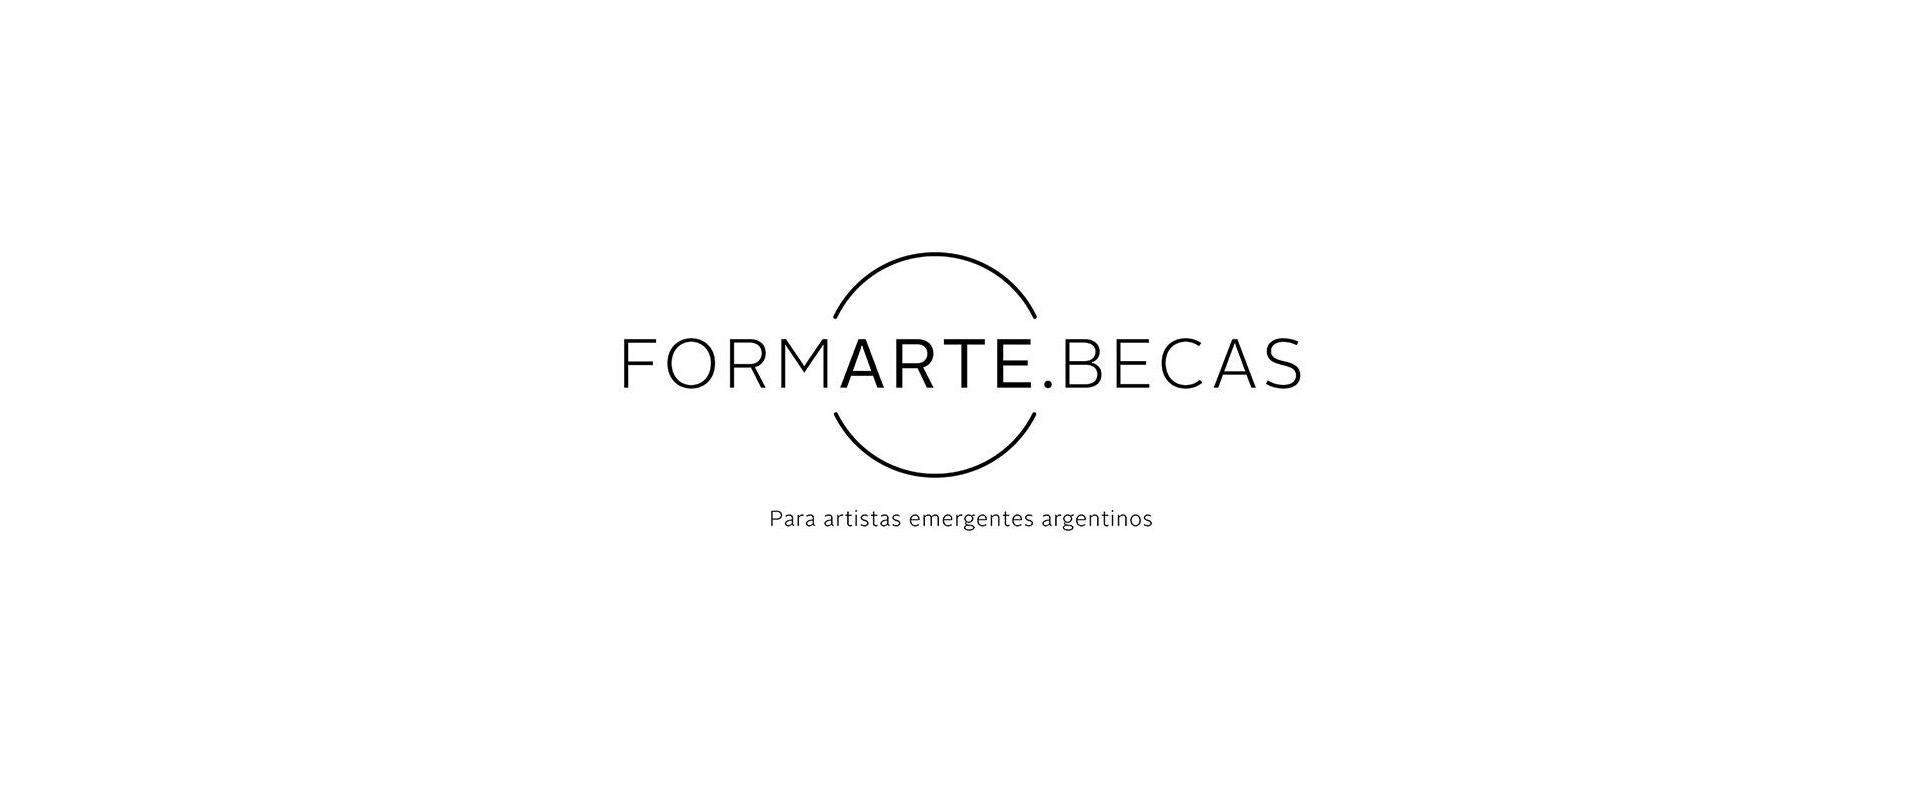 Convocatoria para Artistas Emergentes Argentinos